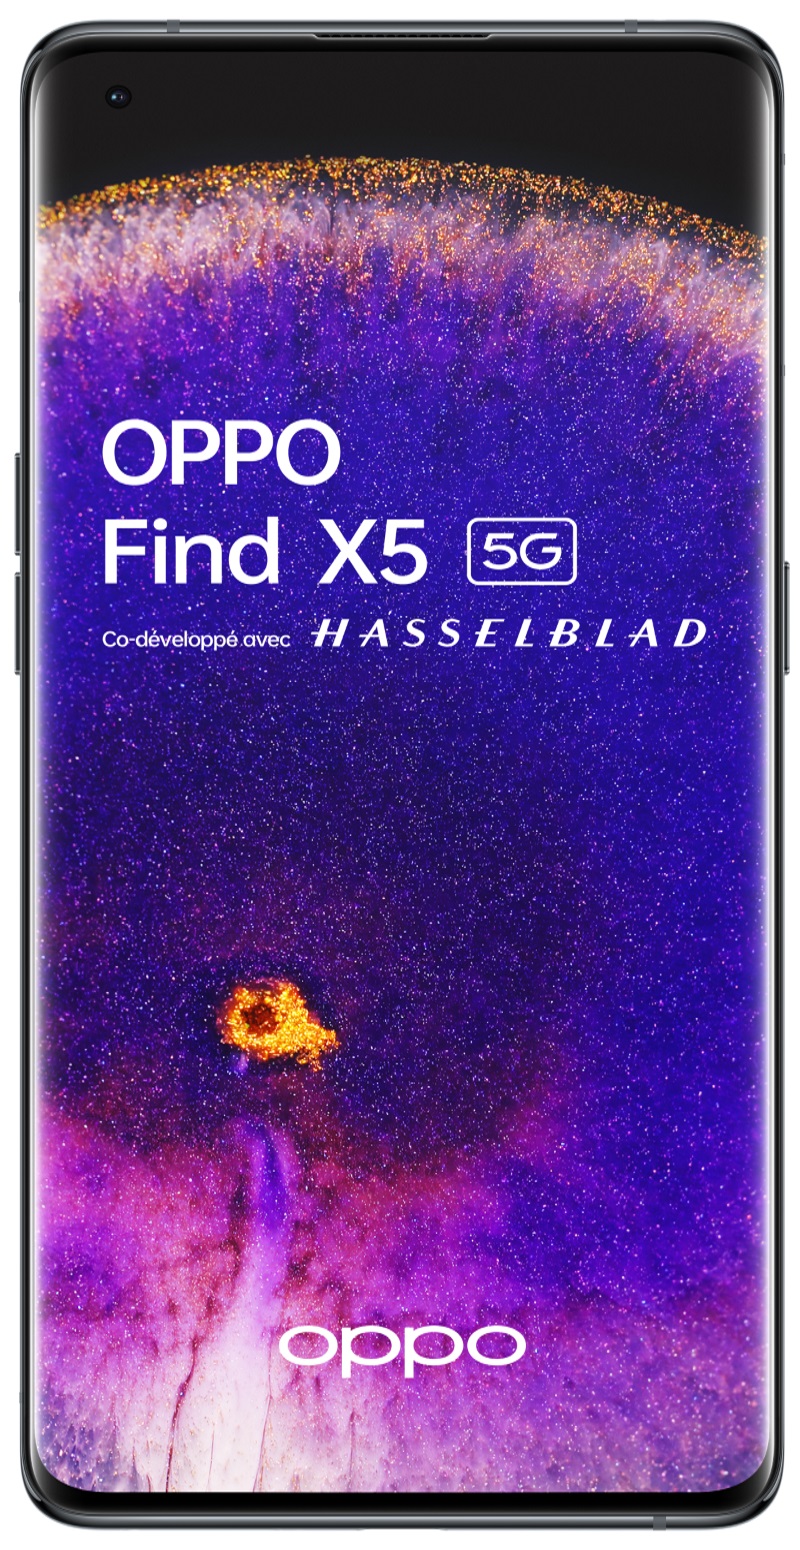 OPPO Find X5 noir 256Go